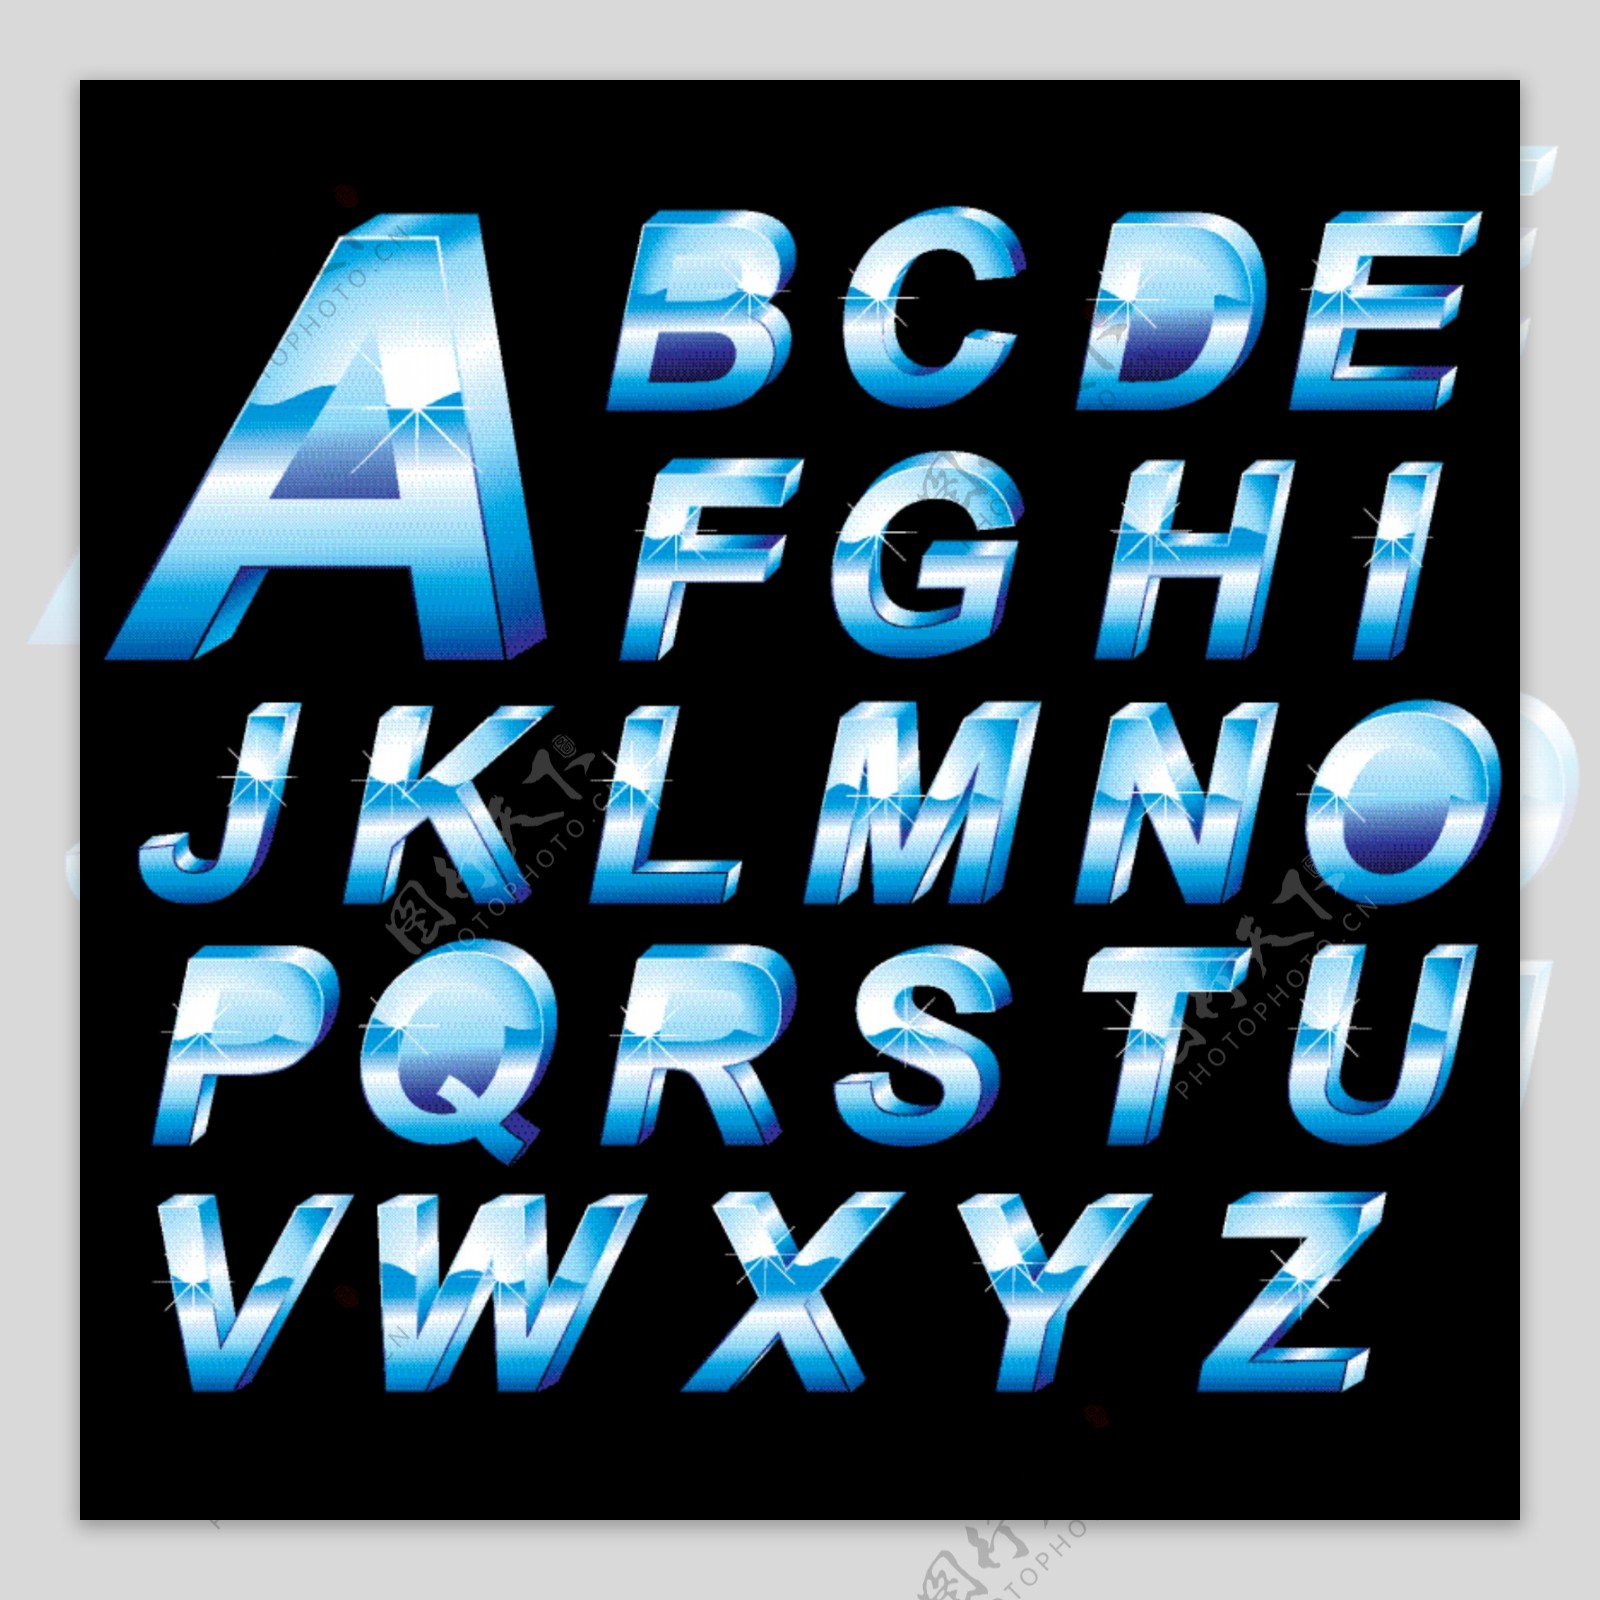 立体冰蓝效果字体设计矢量素材